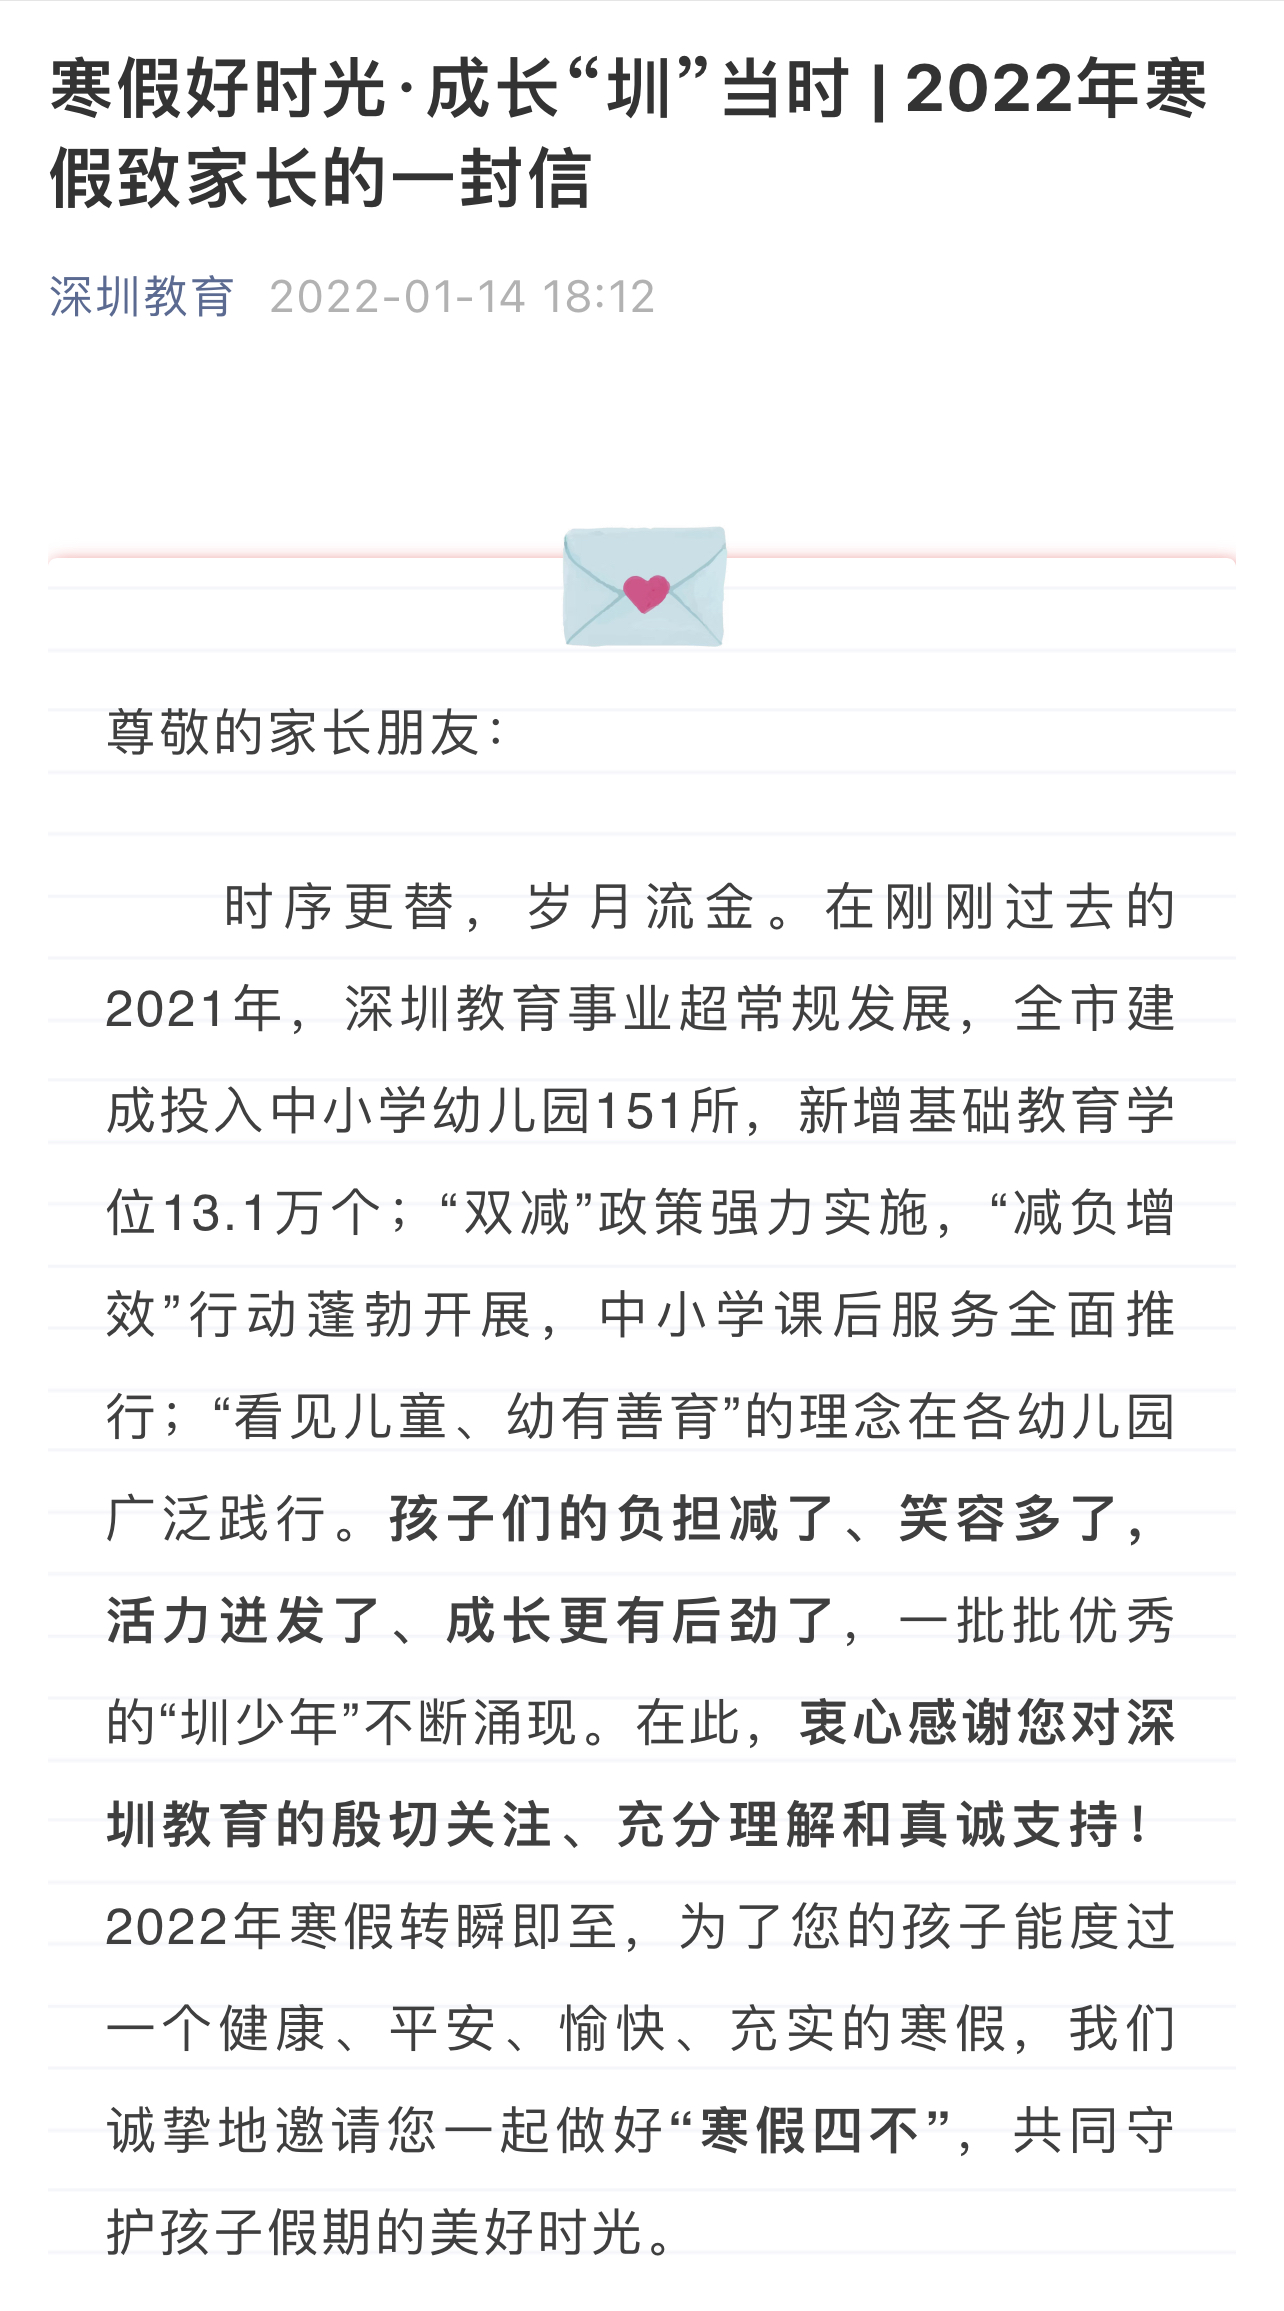 非必要不离深、不出省 深圳市教育局发布2022年寒假致家长的一封信